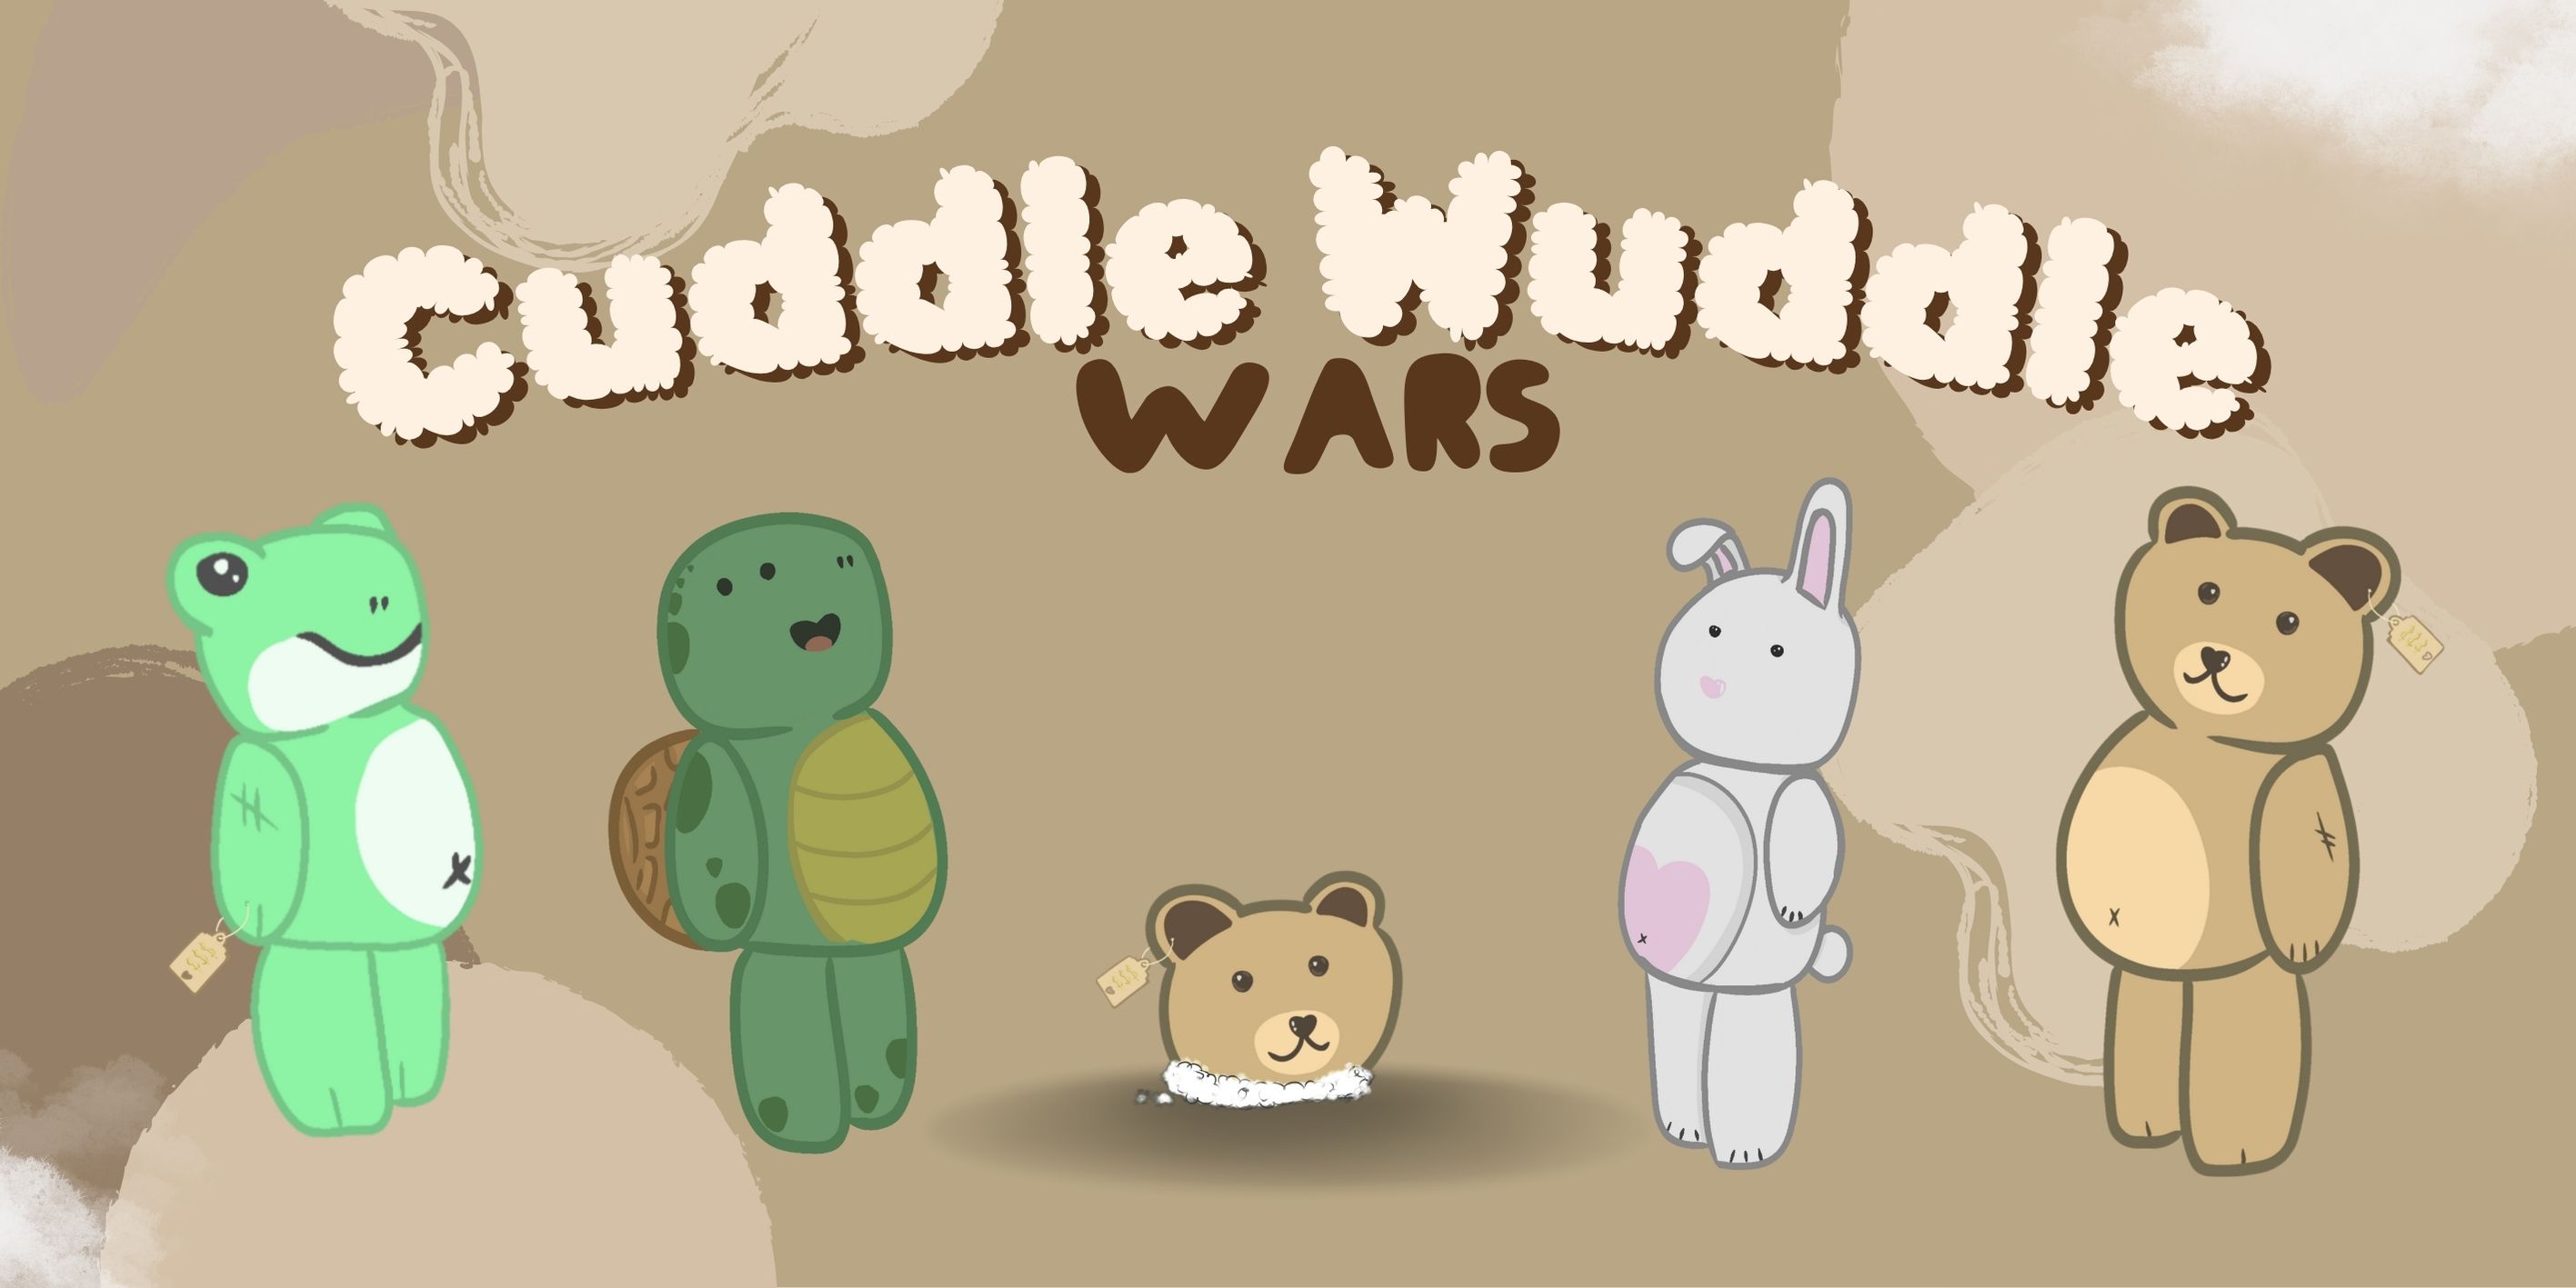 Cuddle Wuddle Wars